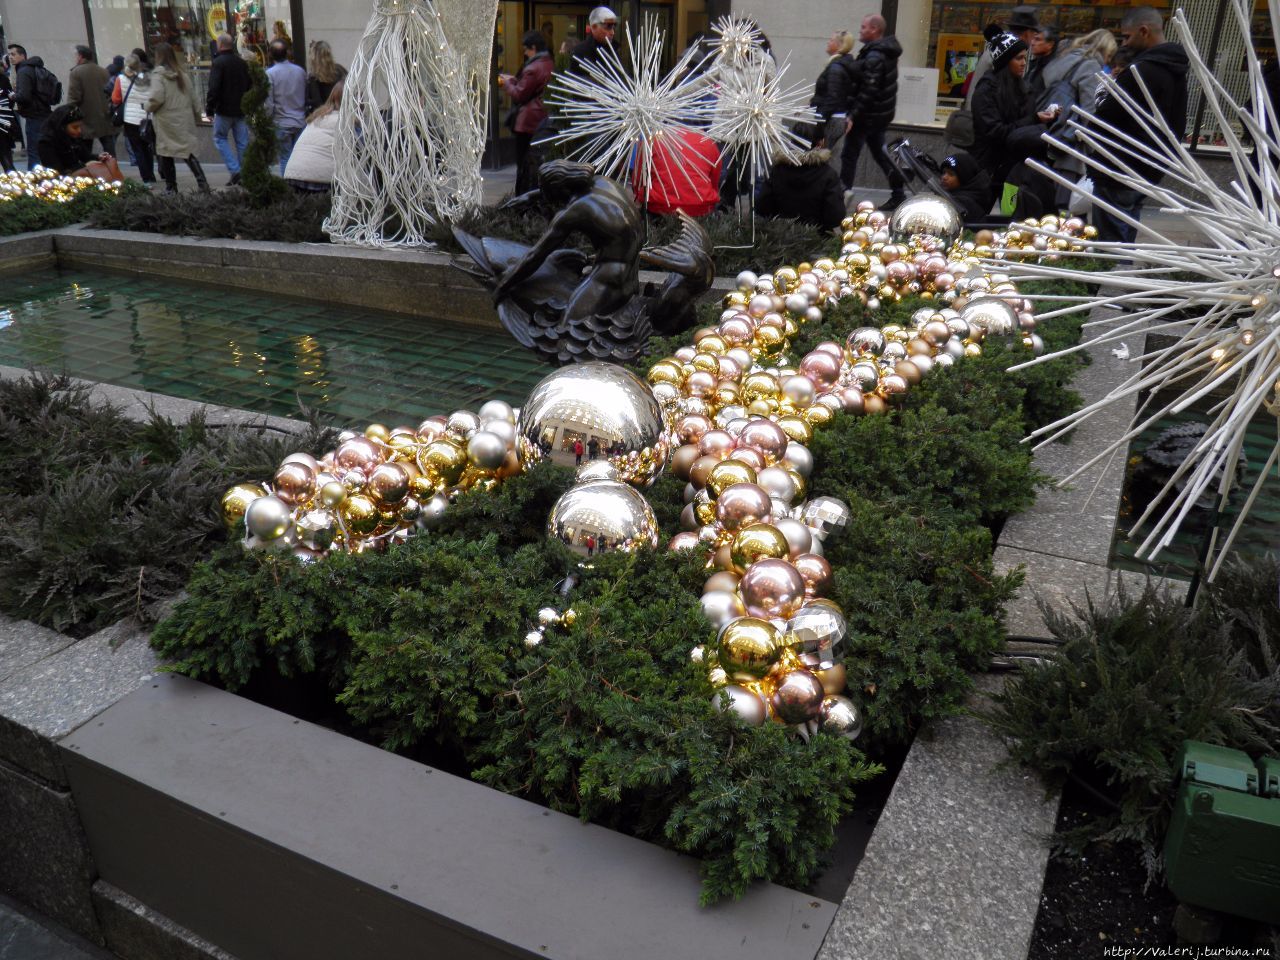 Рождественские украшения на площадке перед Рокфеллер Центром Нью-Йорк, CША